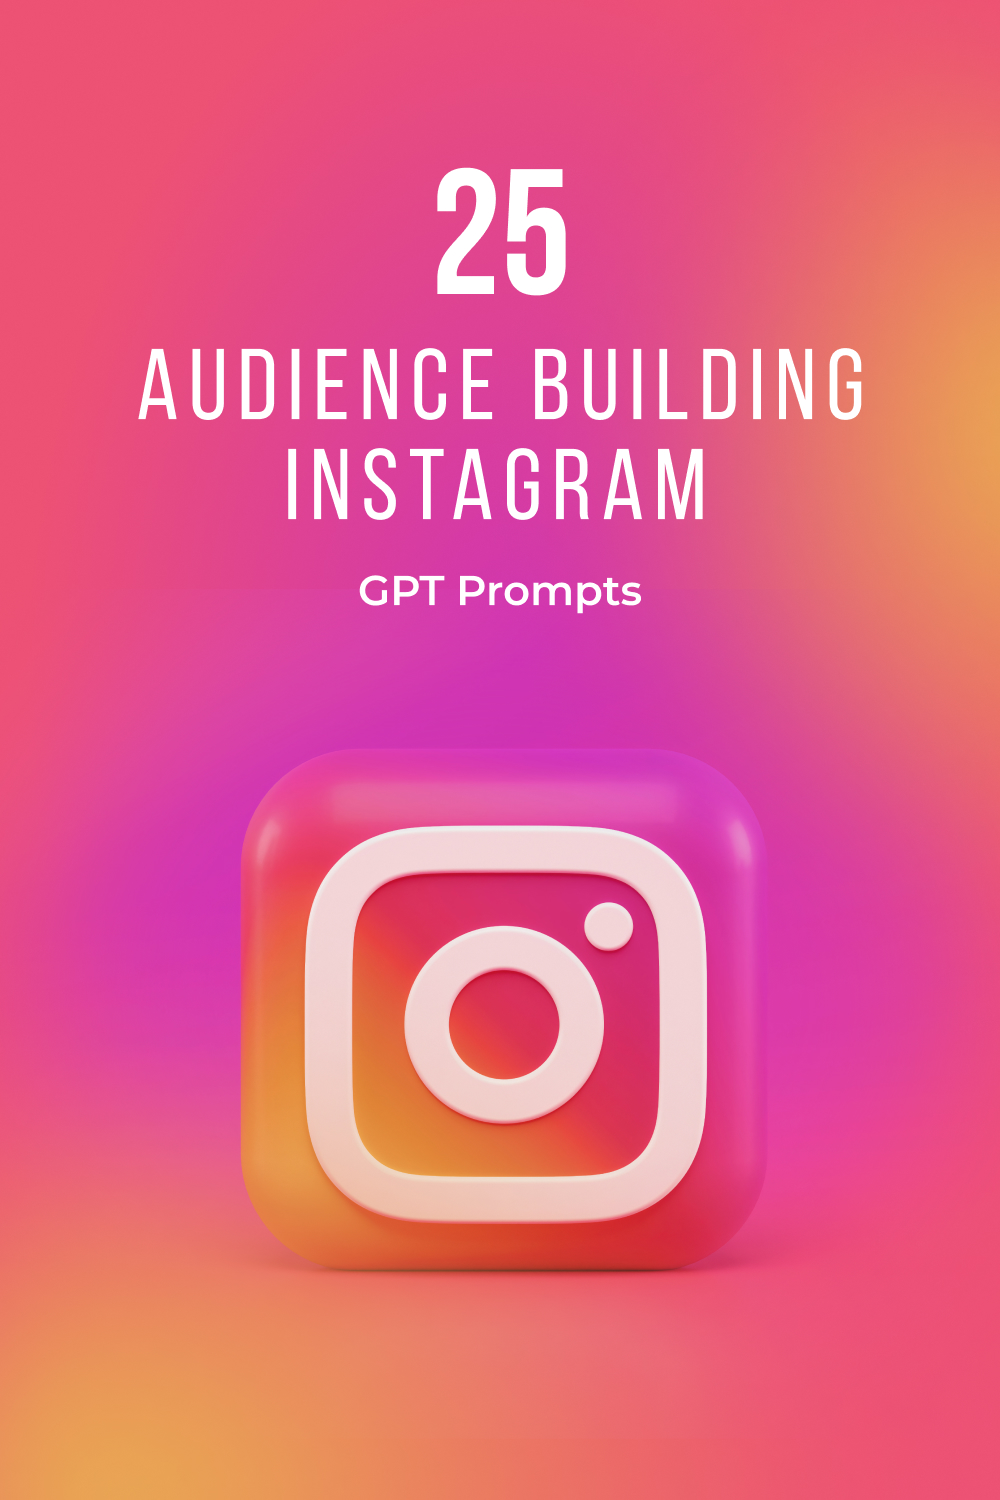 25 audience building instagram 1 323